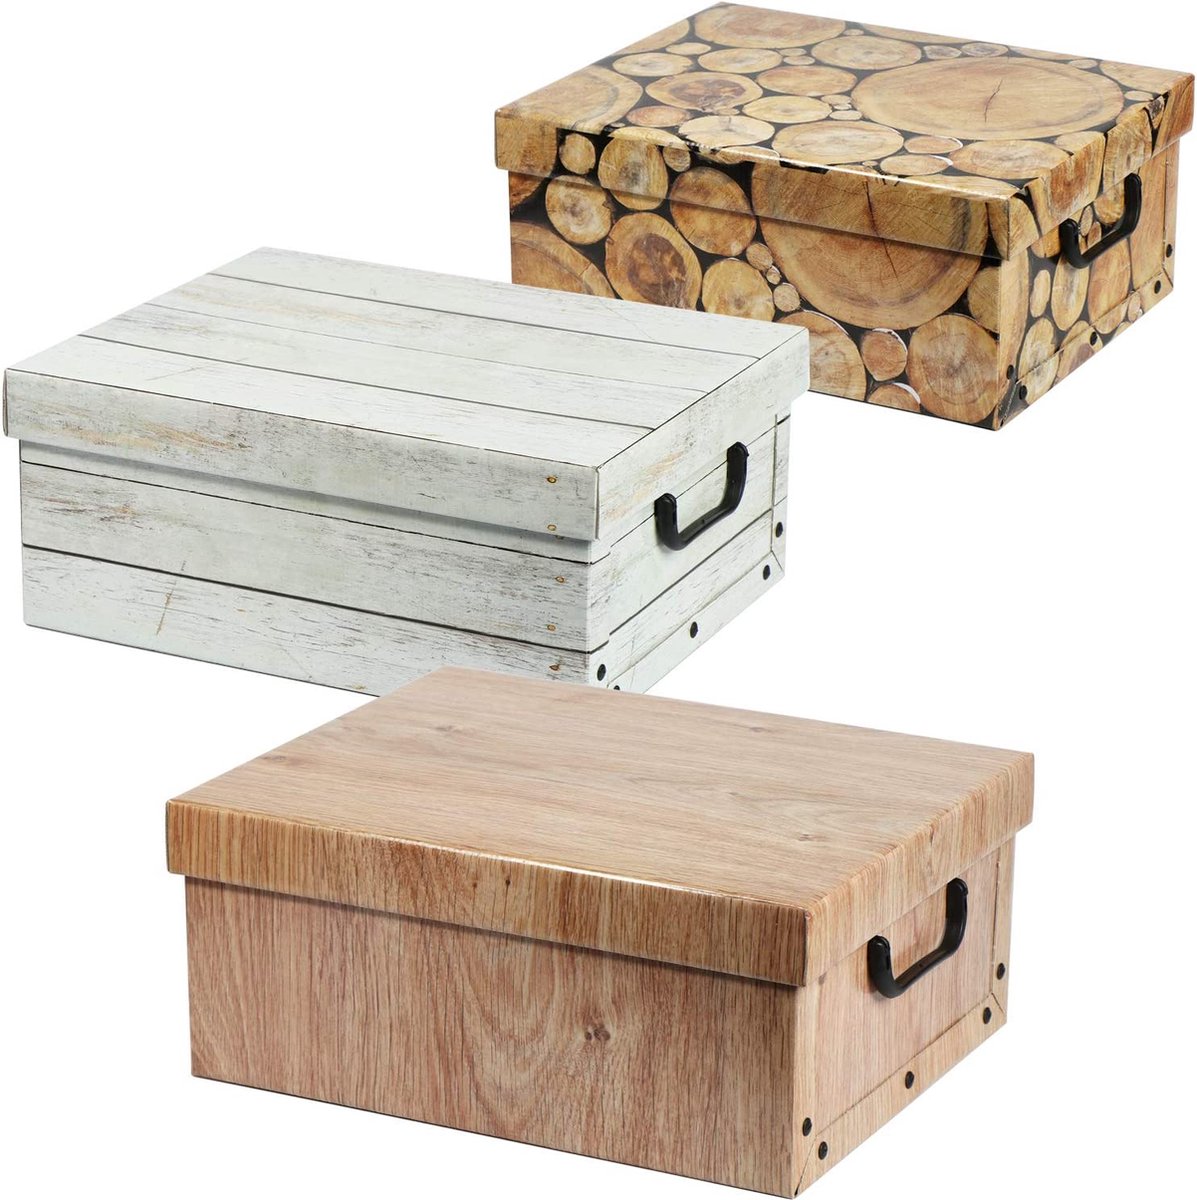 3x opbergdoos in houtlook - decoratief karton, kartonnen doos, doos, doos met deksel en handvatten - voor het opbergen van documenten, knutselaccessoires, kerstballen